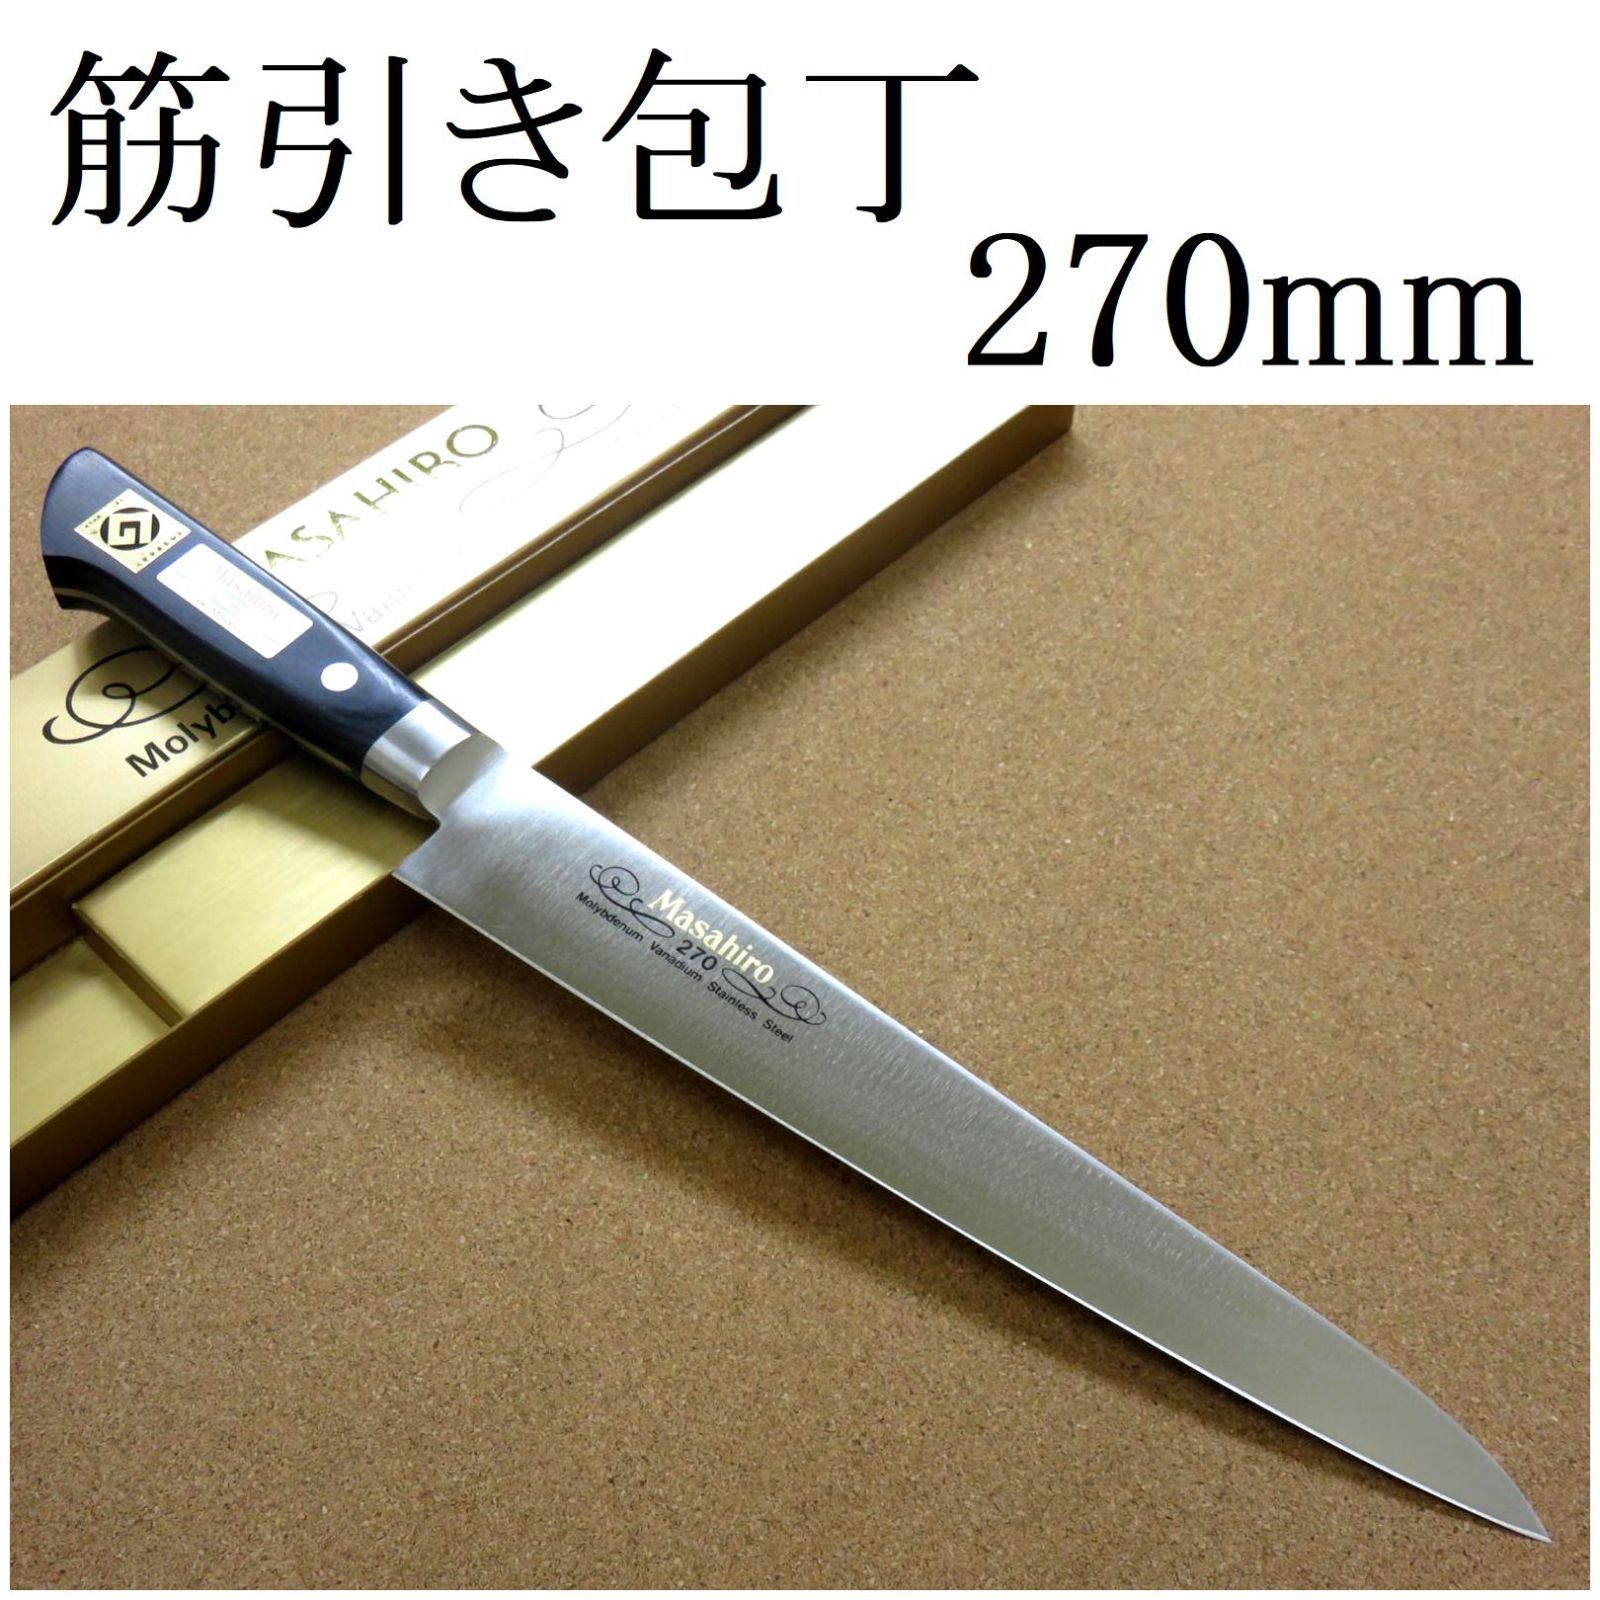 関の刃物 筋引包丁 270mm 正広 MV鋼 口金 刺身包丁 スライシングナイフ